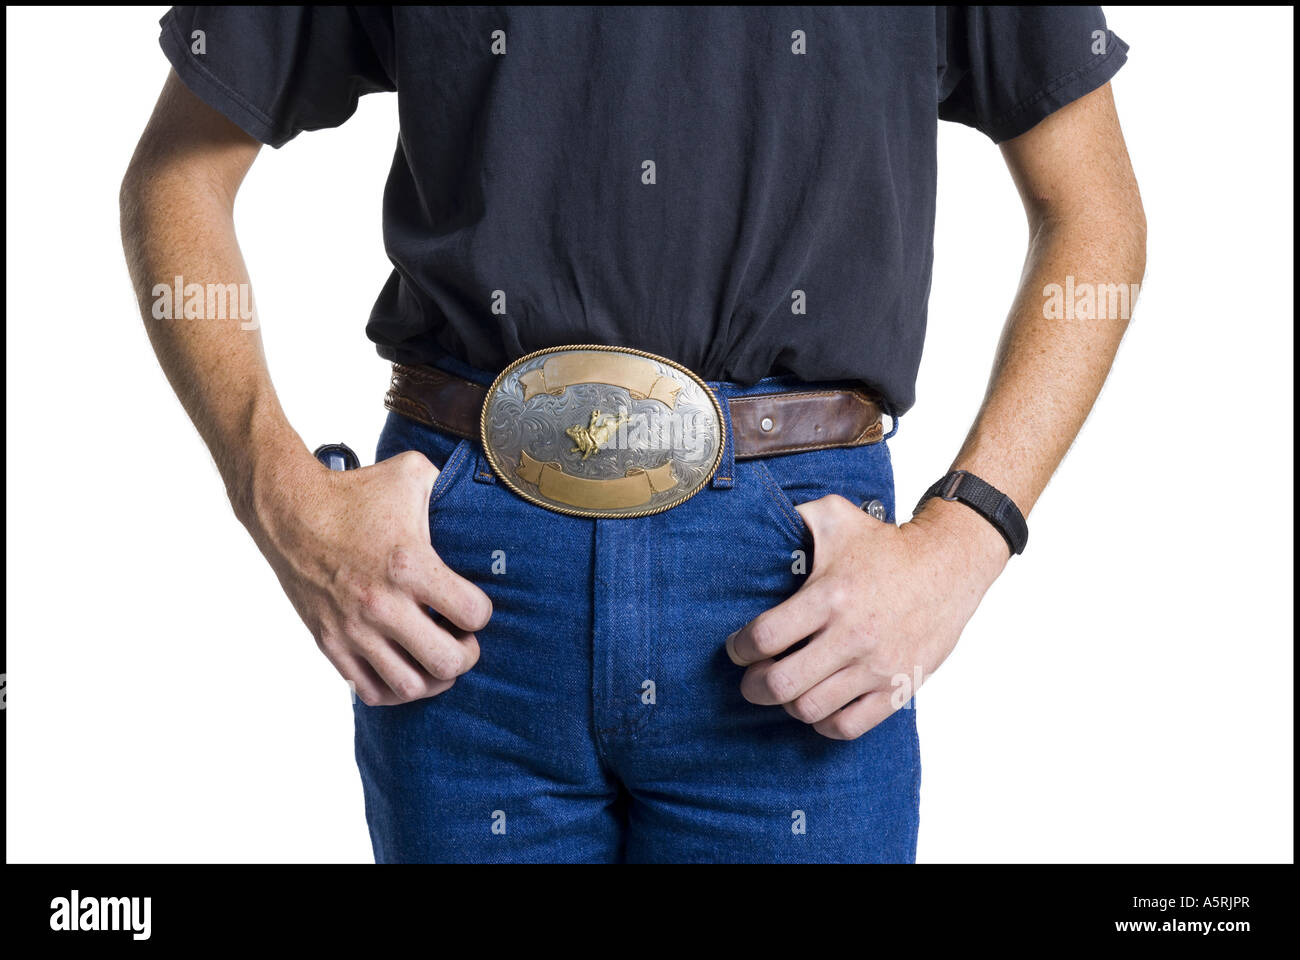 mens large belt buckles